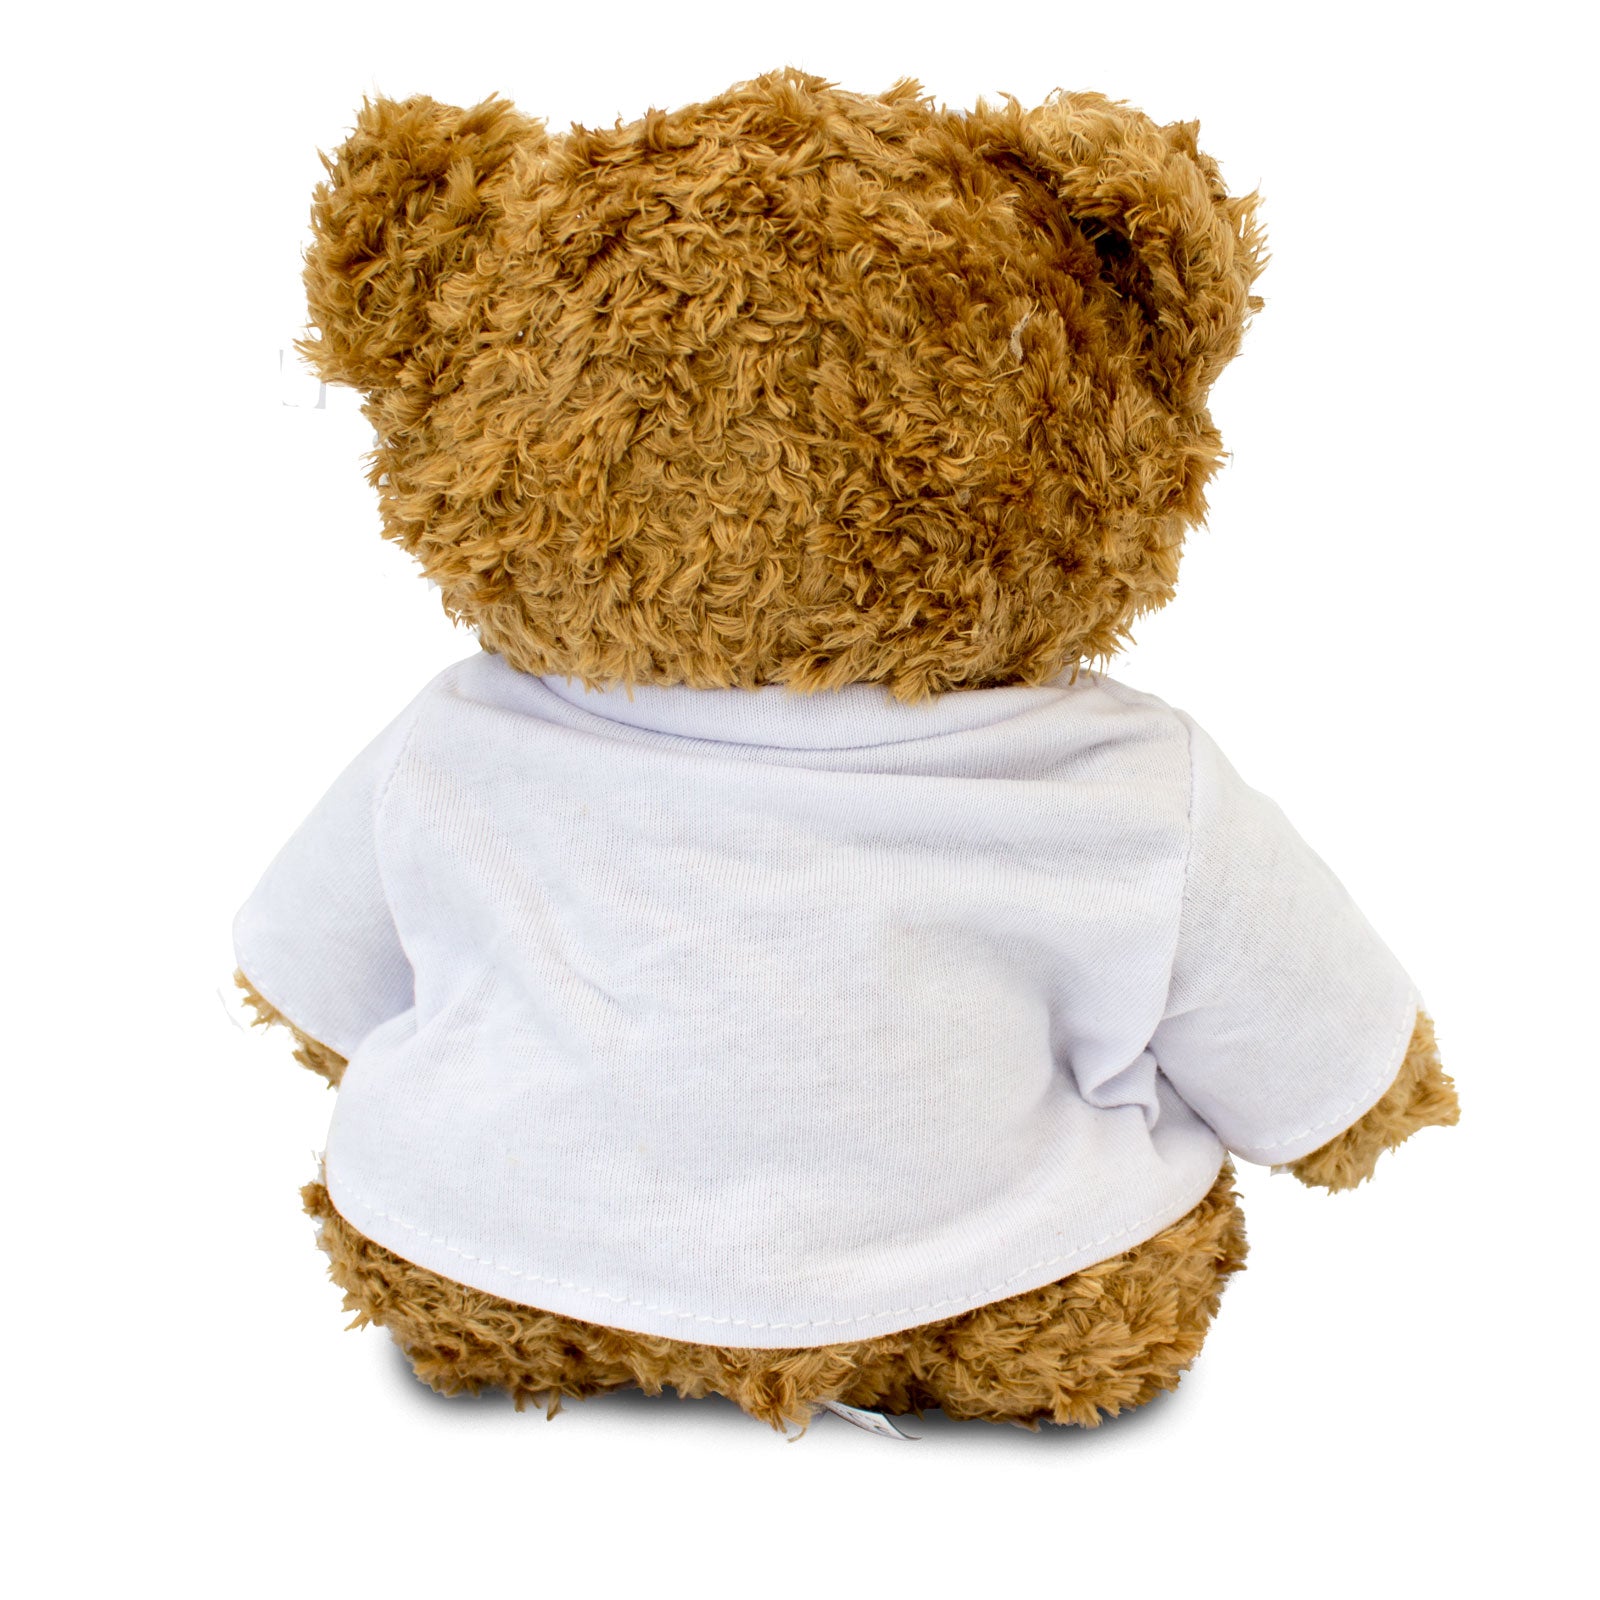 The Greatest Mommy Ever - Teddy Bear